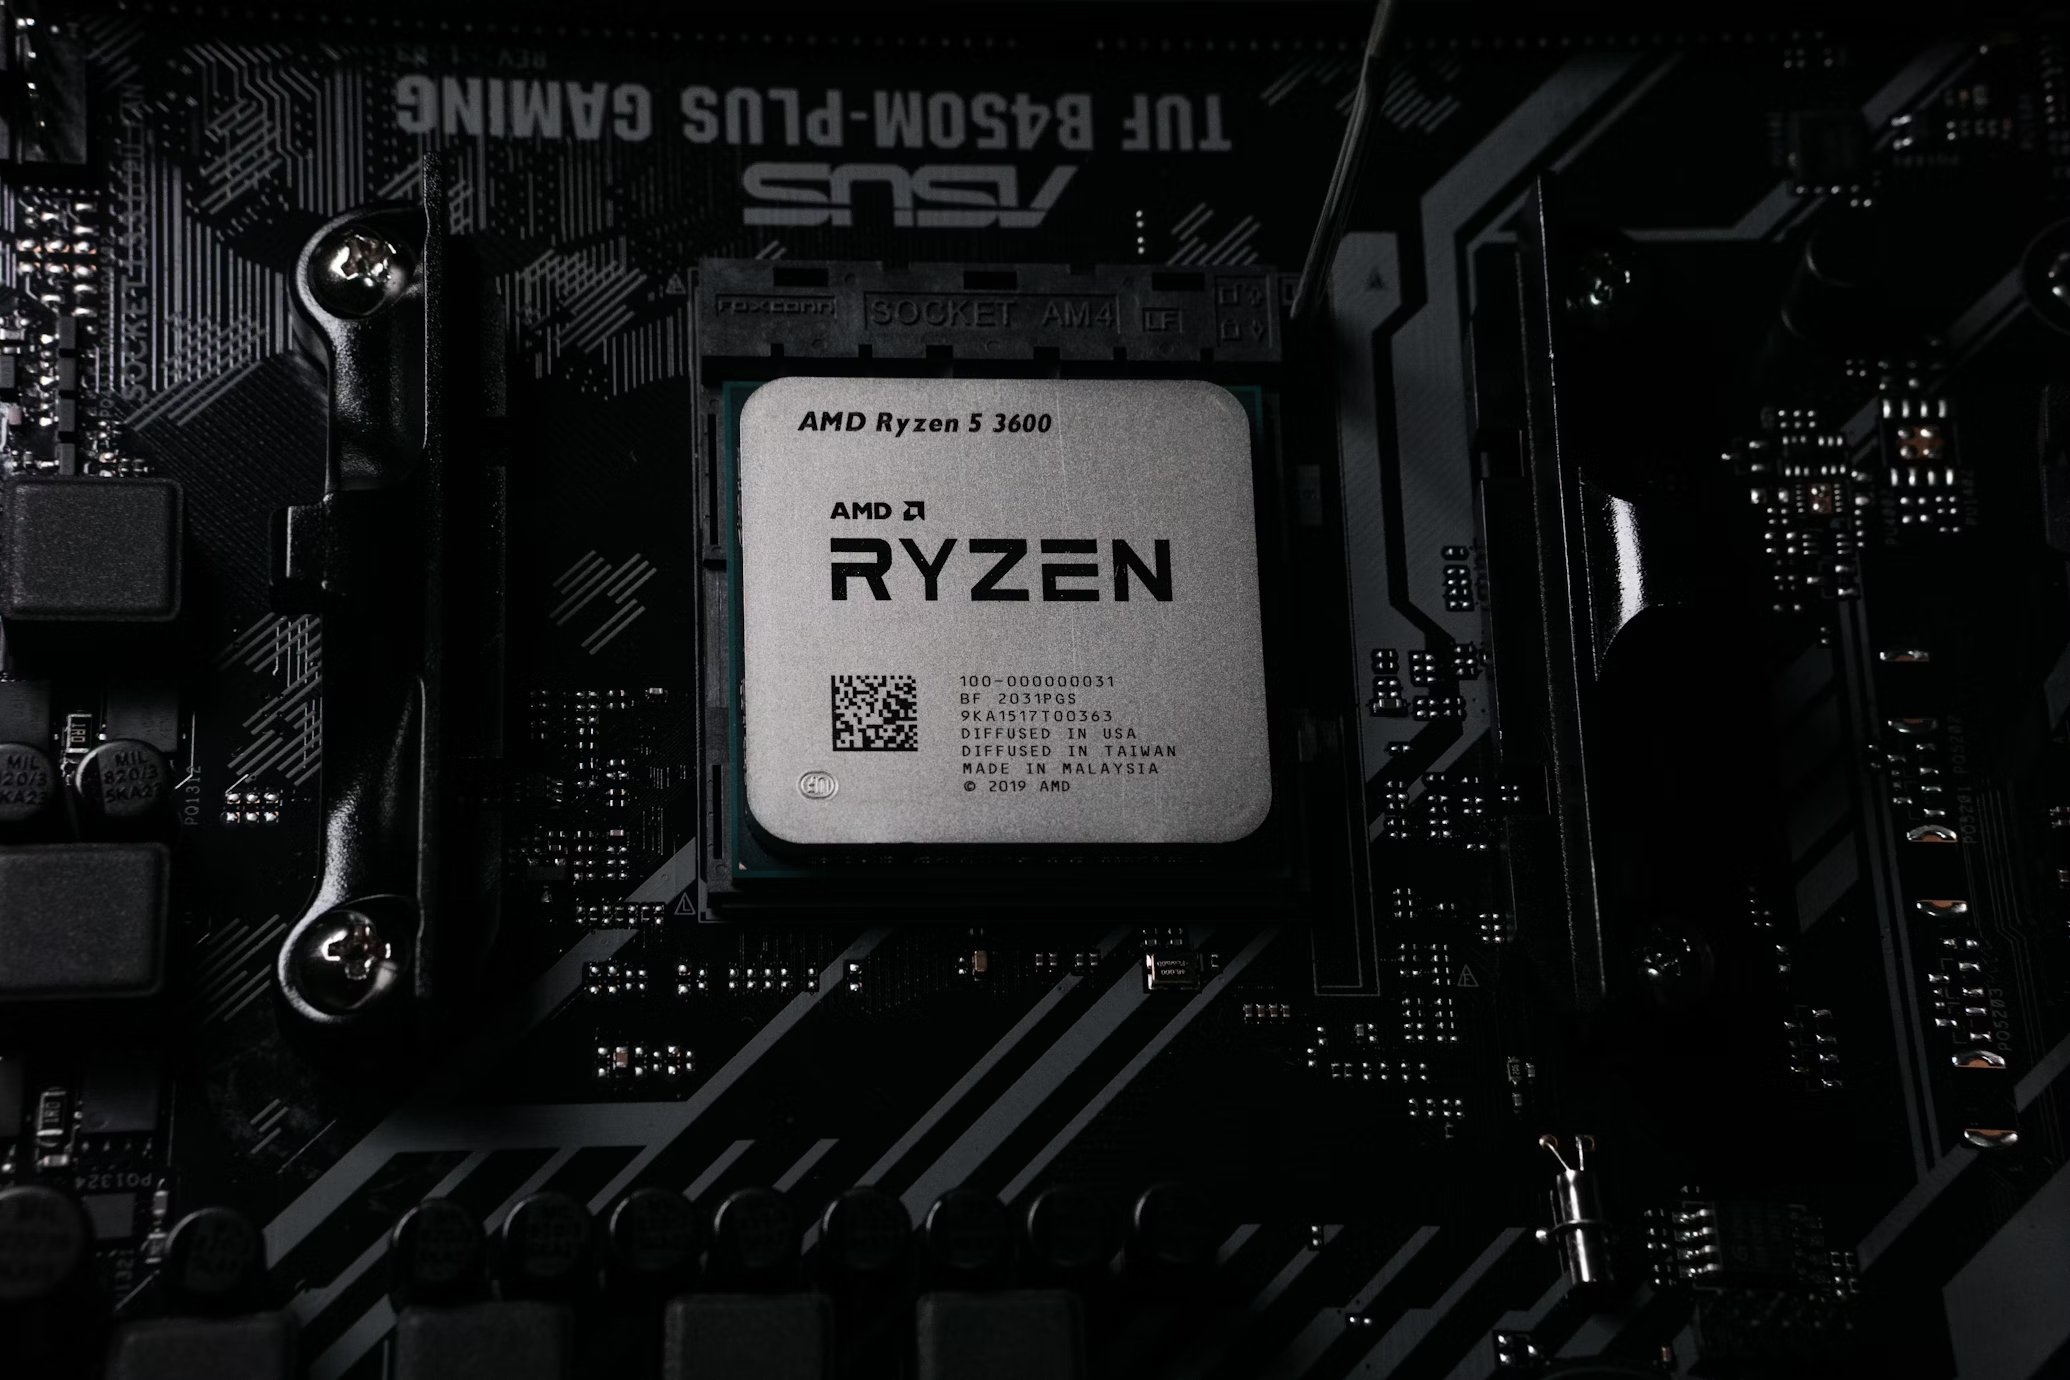 Nova versão dos drivers de chipset da AMD corrige problema de suspensão no Windows